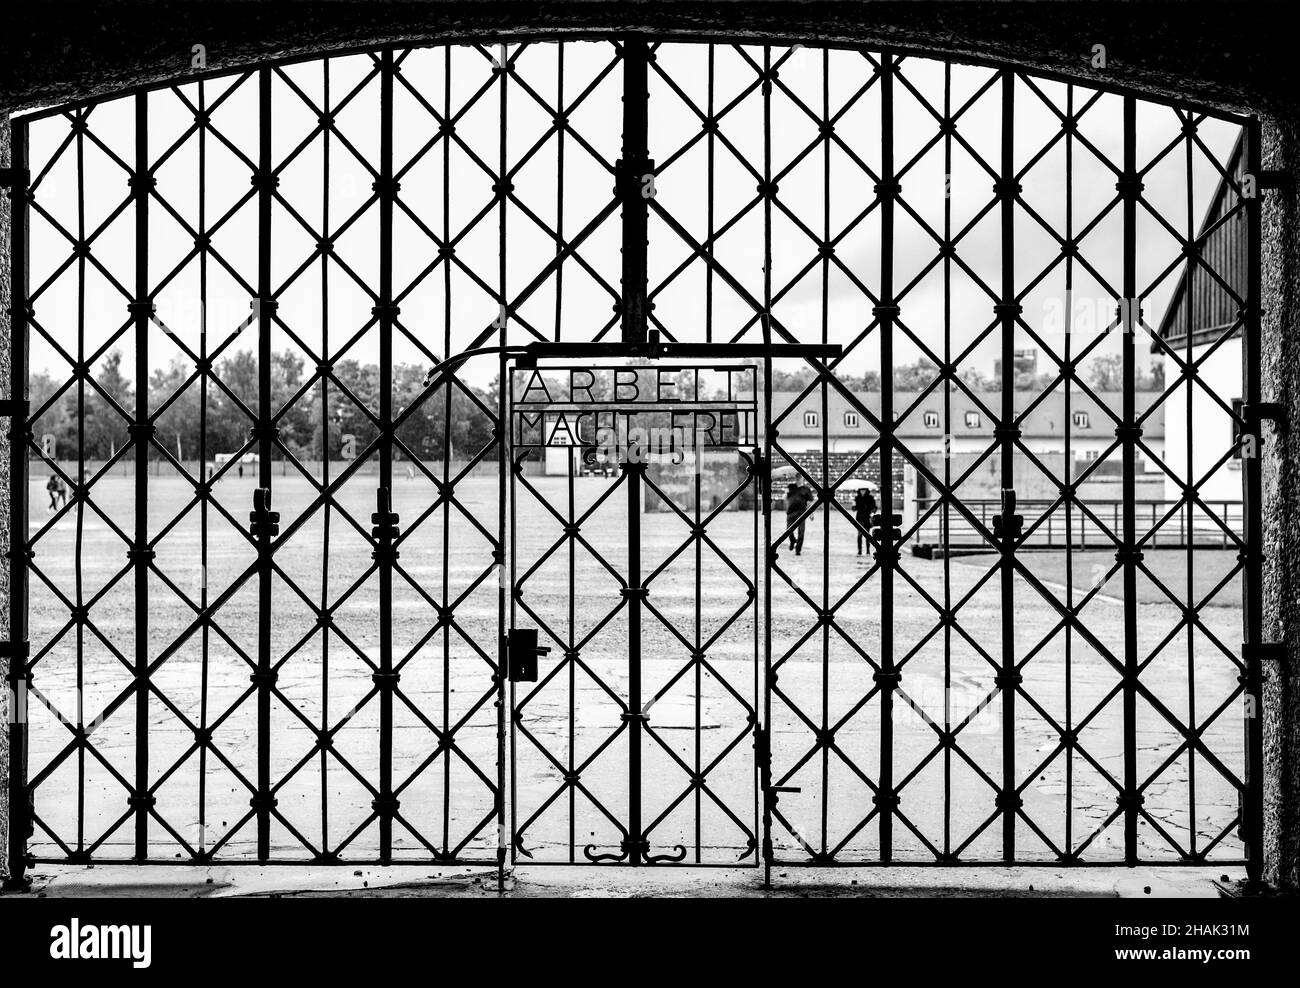 Ikonisches Tor am Eingang des Konzentrationslagers Dachau mit der verspotteten Inschrift -work brings Freedom-, Deutschland Stockfoto